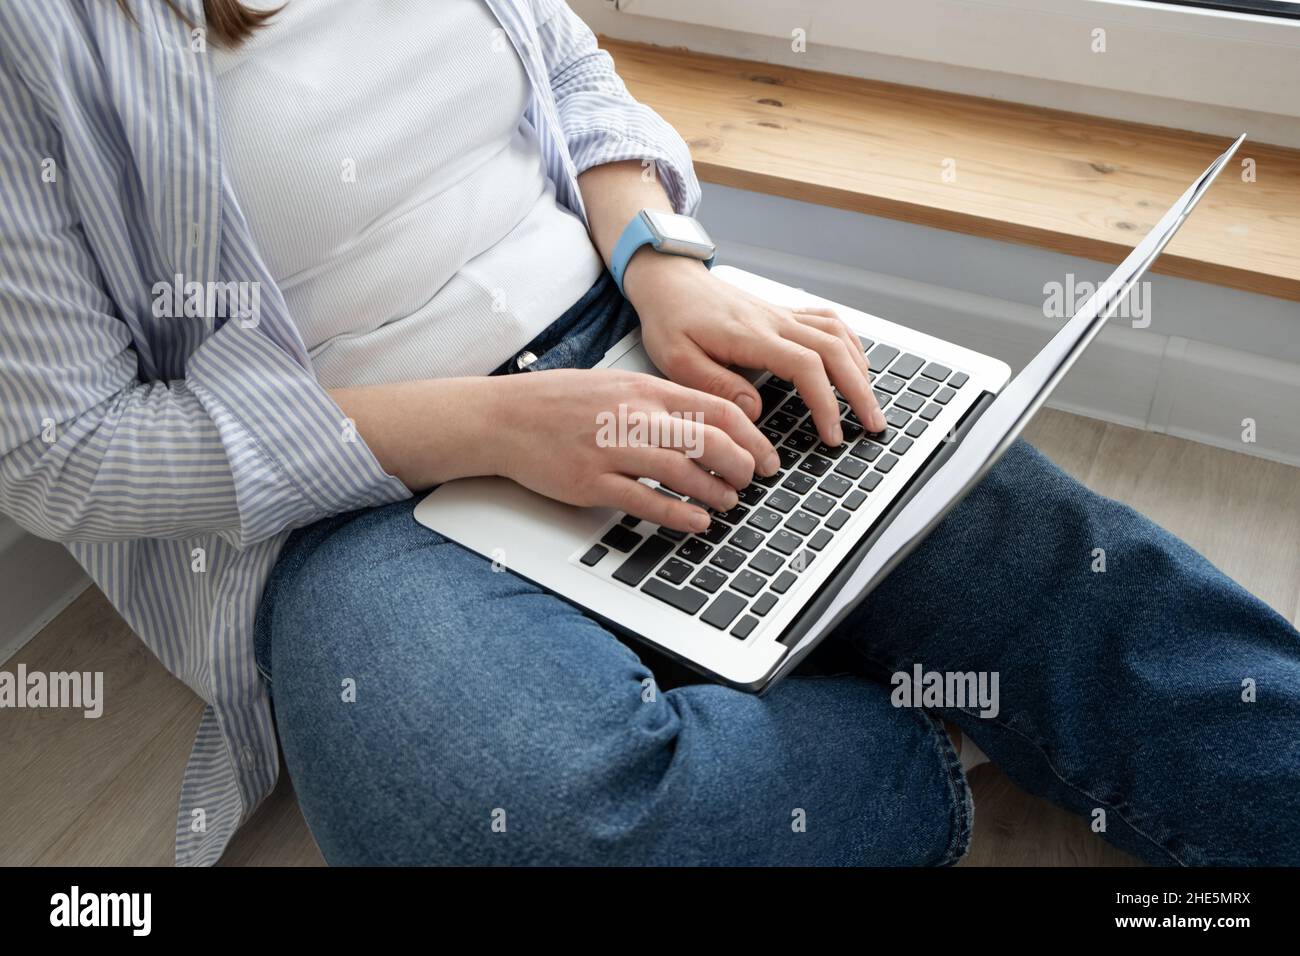 Femme d'âge moyen travaillant à domicile.Fille utilisant un ordinateur portable à la maison, assis près d'une grande fenêtre.Concept de travail à distance Banque D'Images